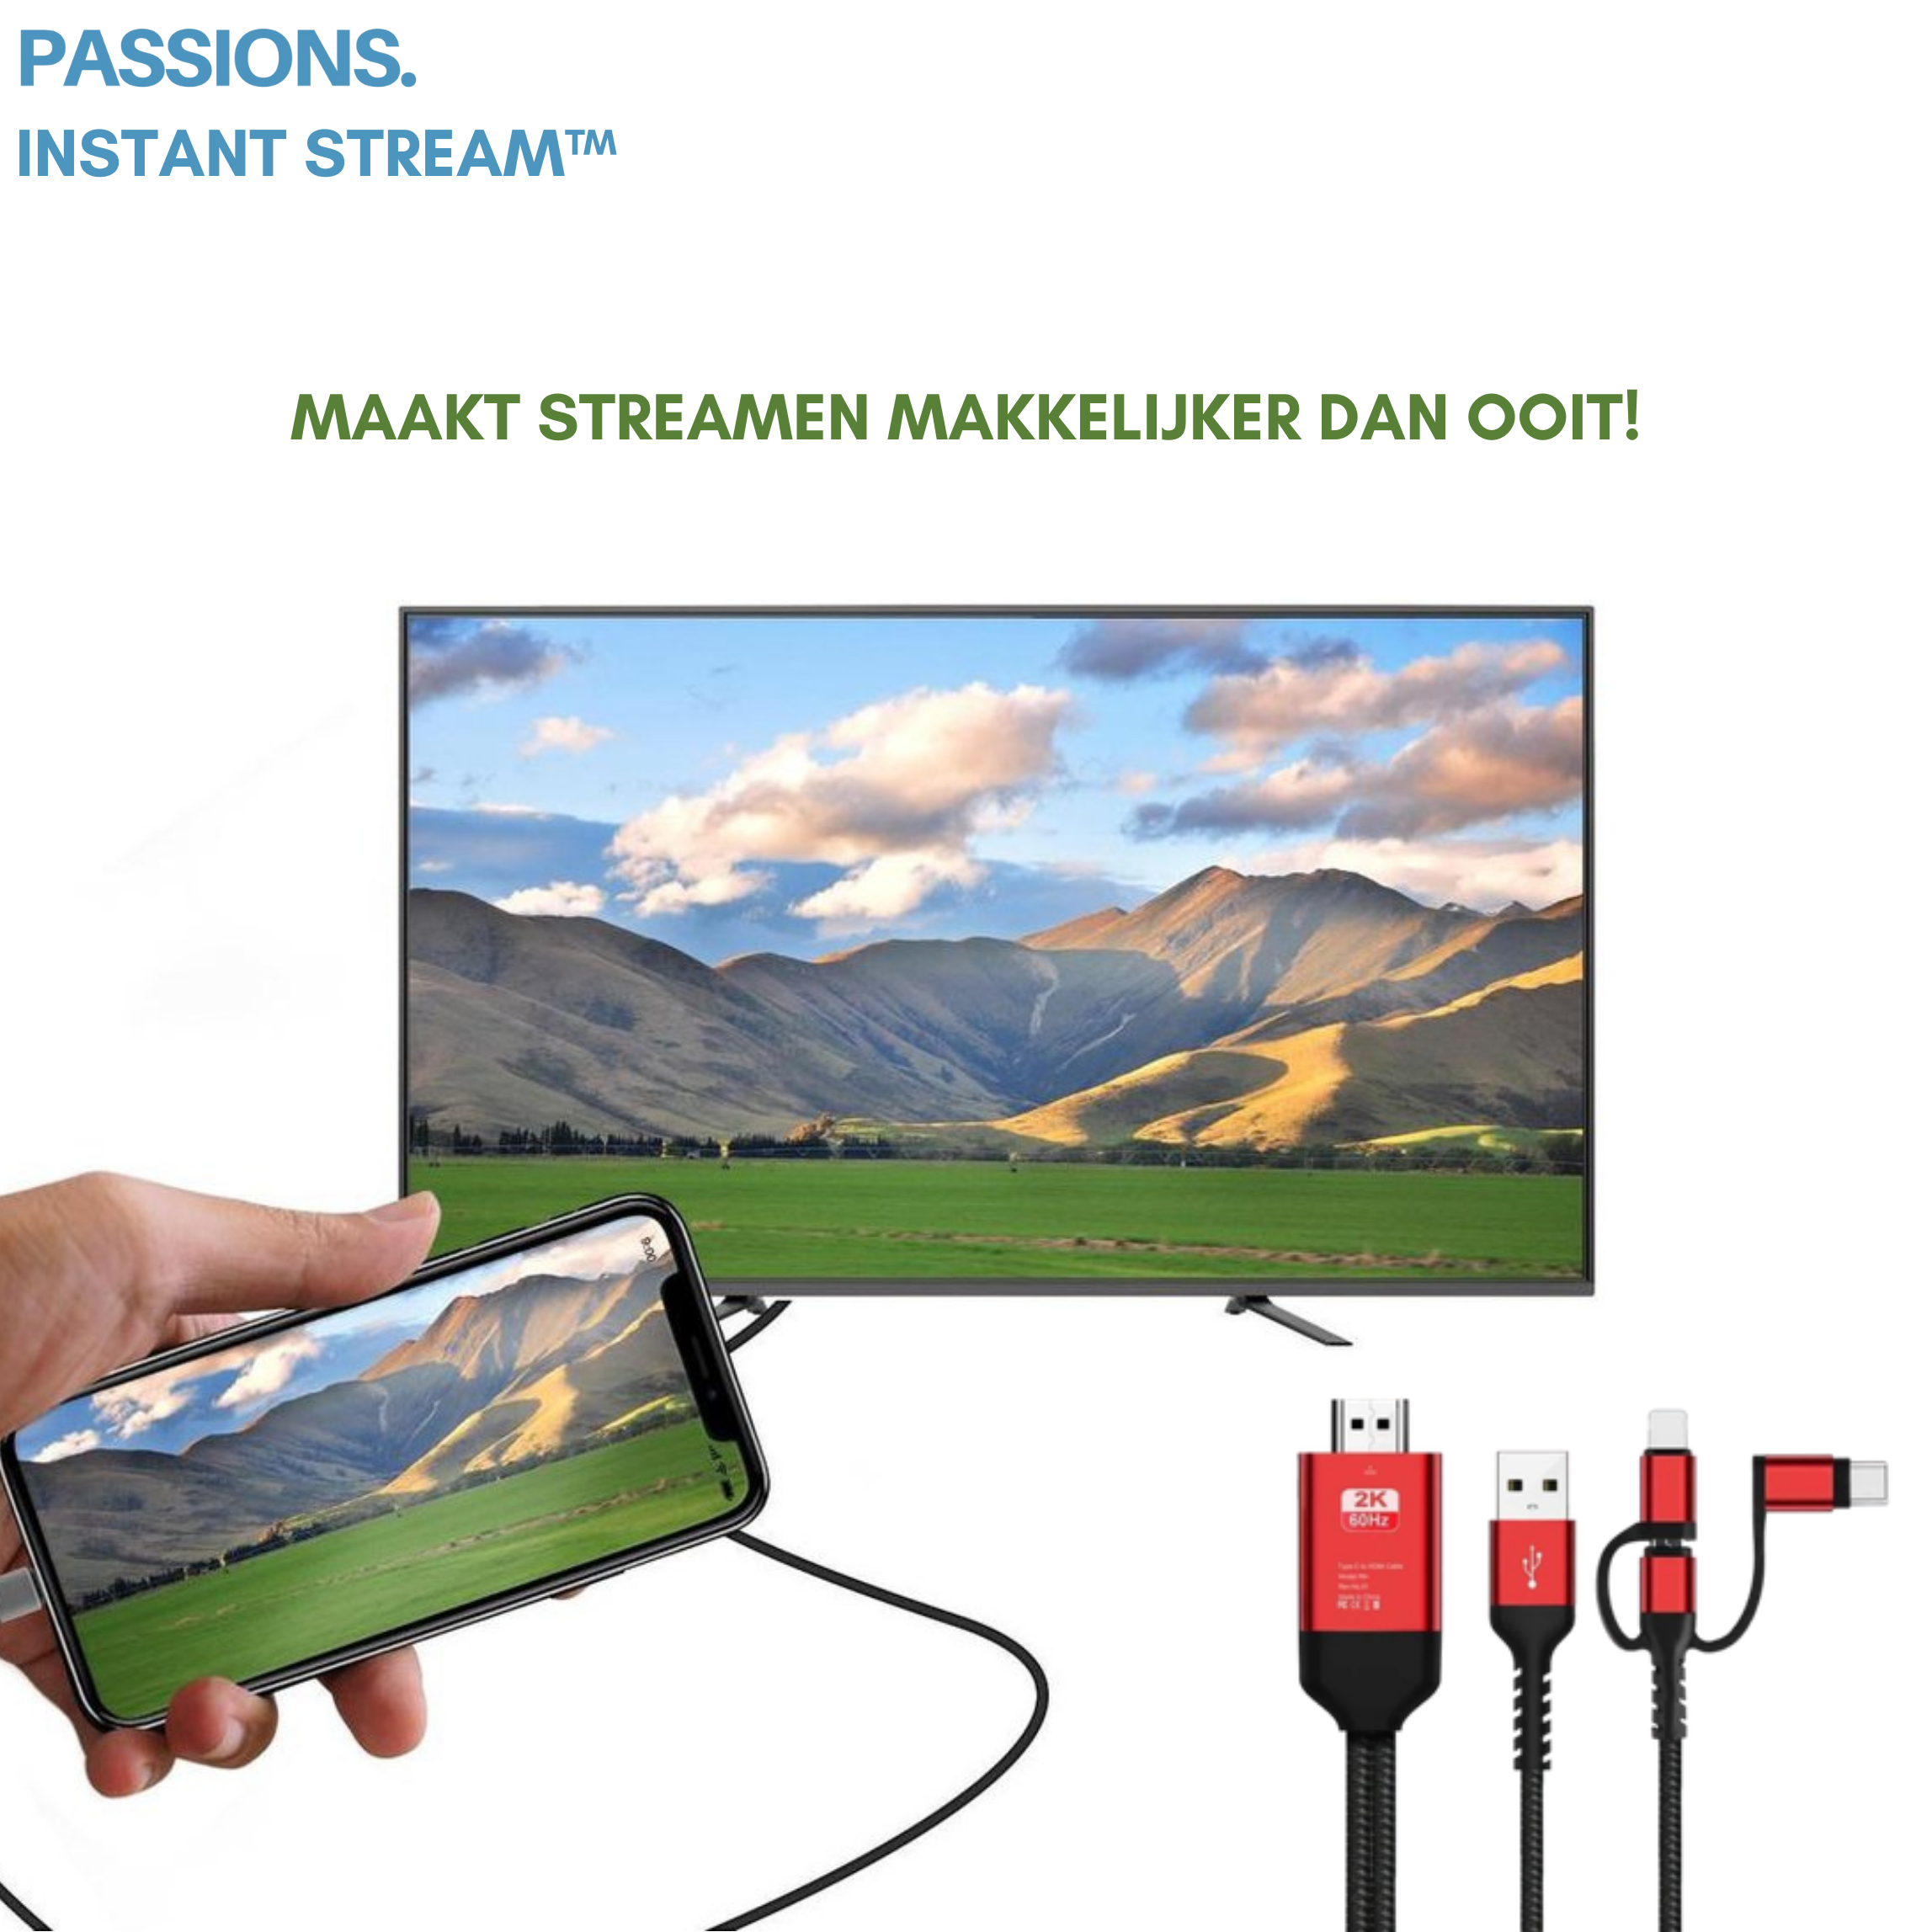 Instant Stream™ - HDMI kabel voor schermcasting zonder vertraging en zonder wifi